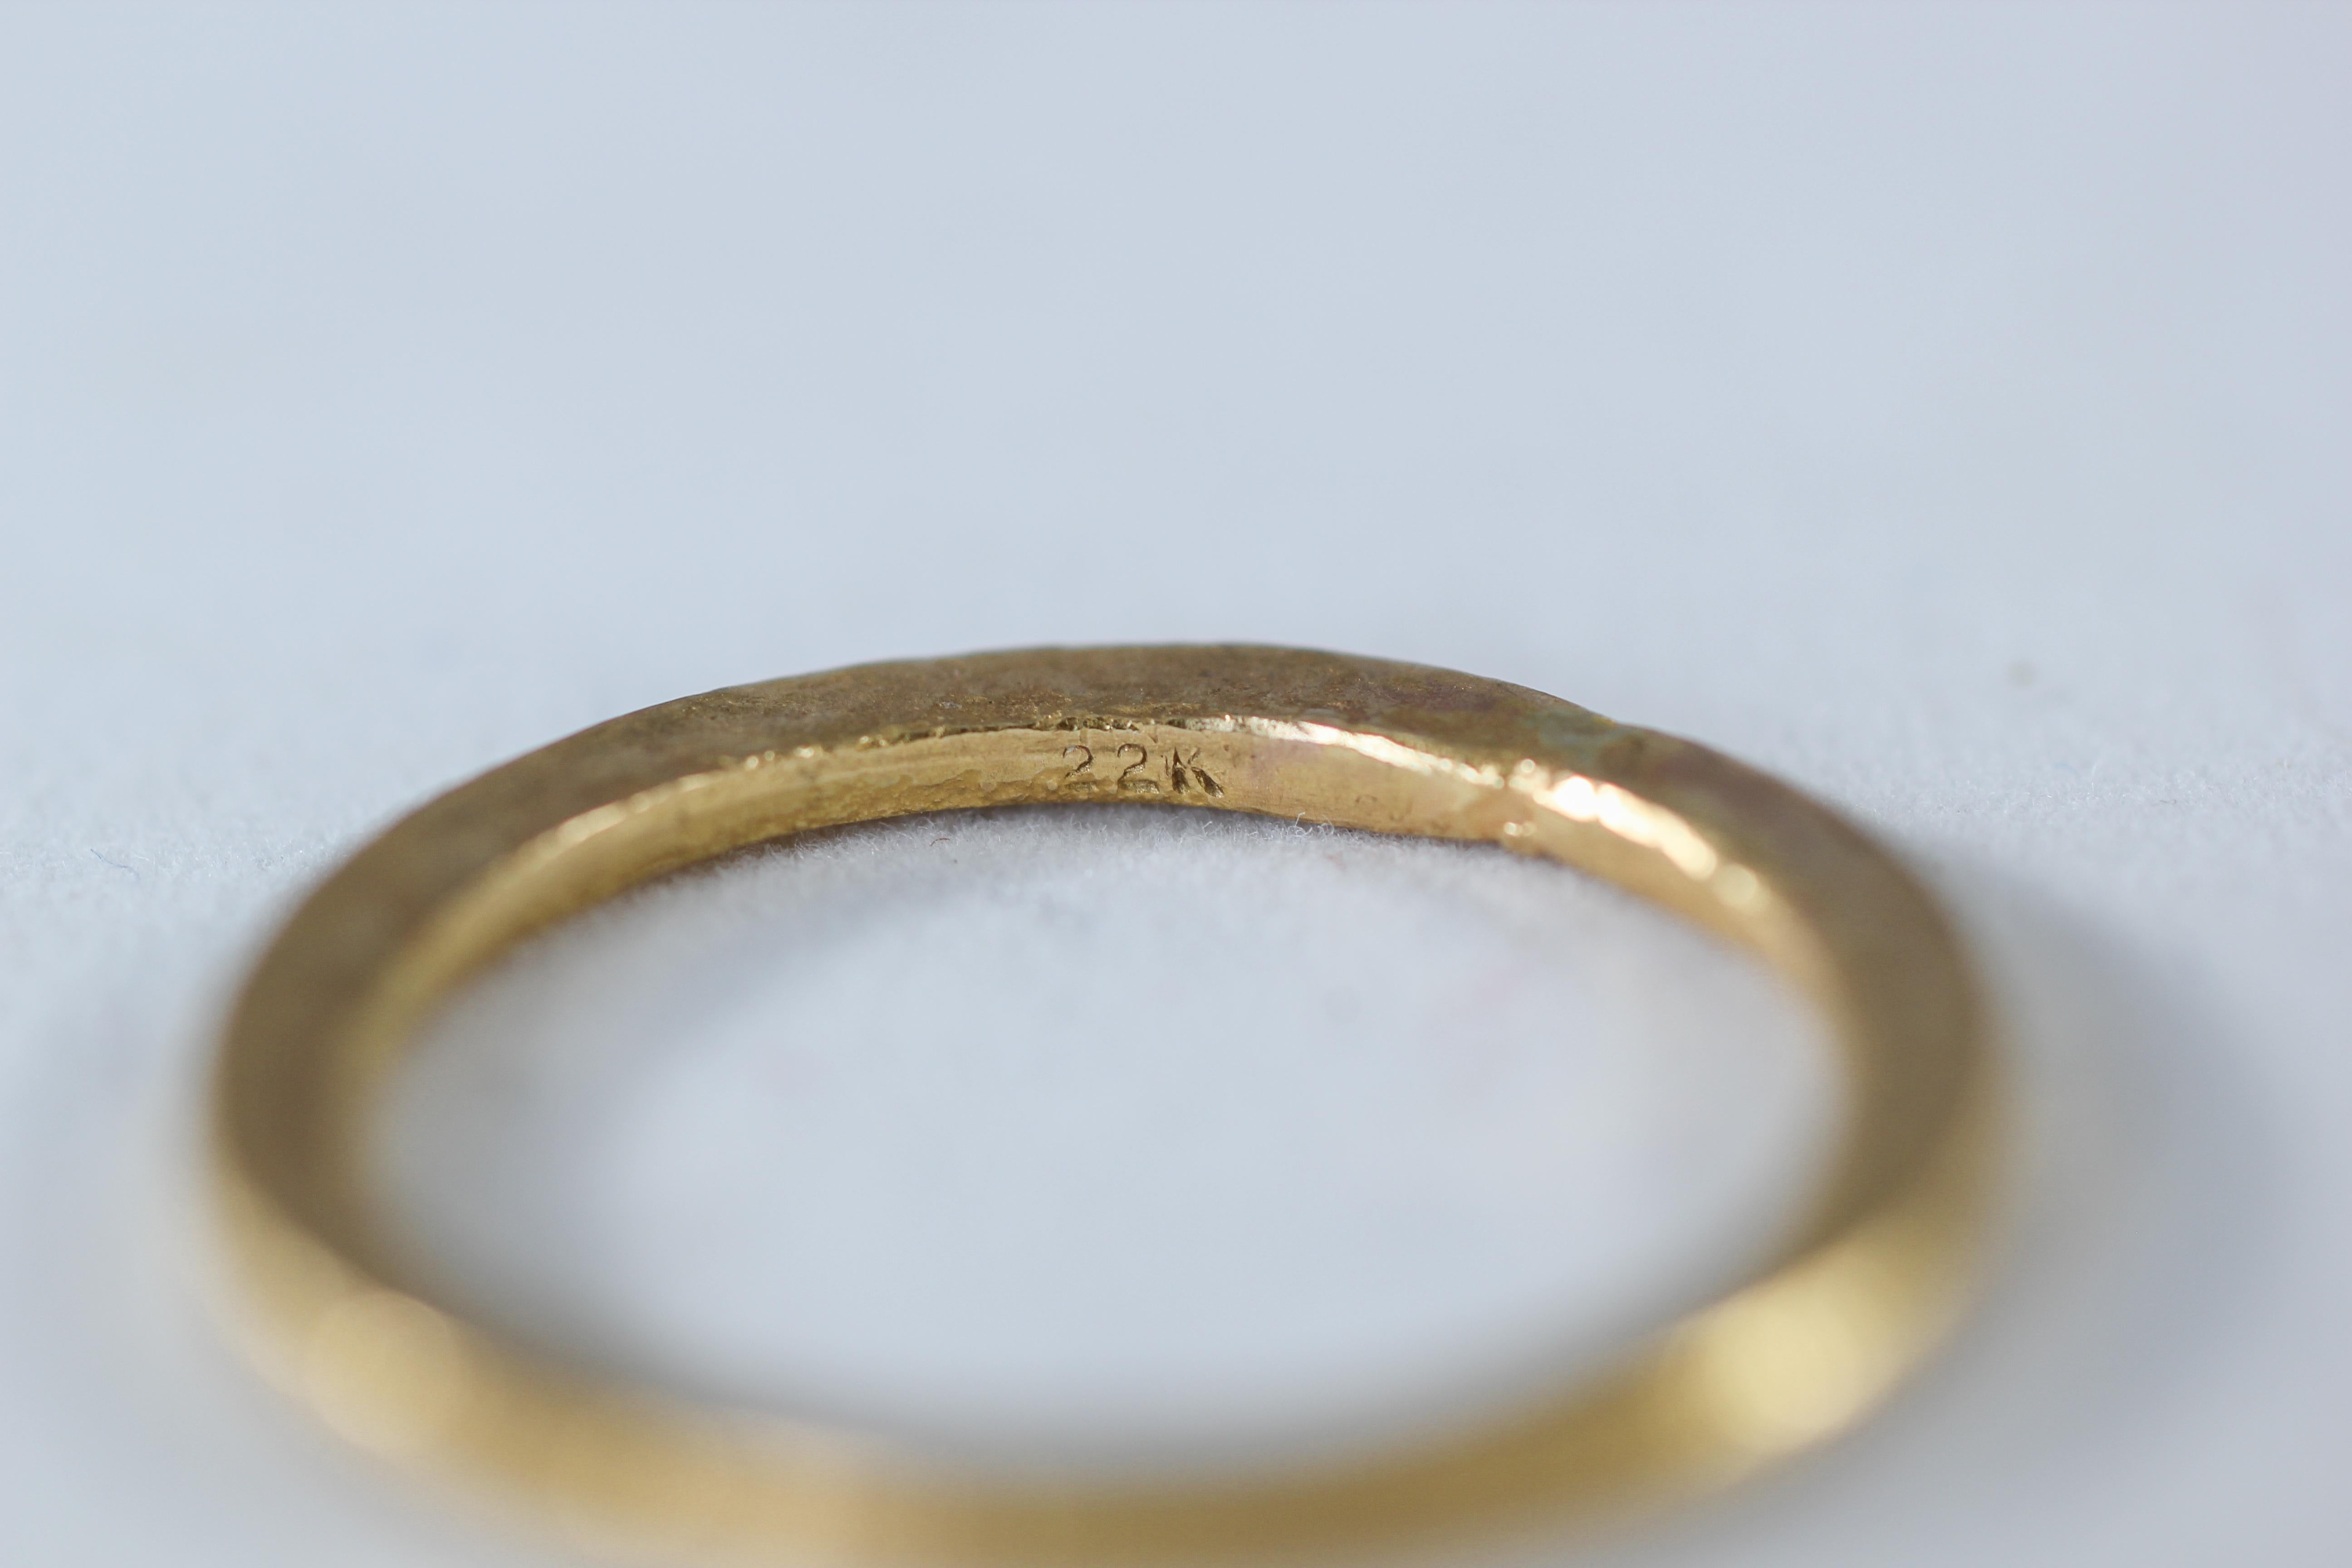 Ein Braut- oder Ehering aus recyceltem 22-karätigem Gold. Der moderne Unisex-Ehering Simplicity Medium Disk wird von AB Jewelry NYC entworfen und handgefertigt. Unisex, Ideal für Mann oder Frau. Tragen Sie ihn allein oder kombinieren Sie ihn mit